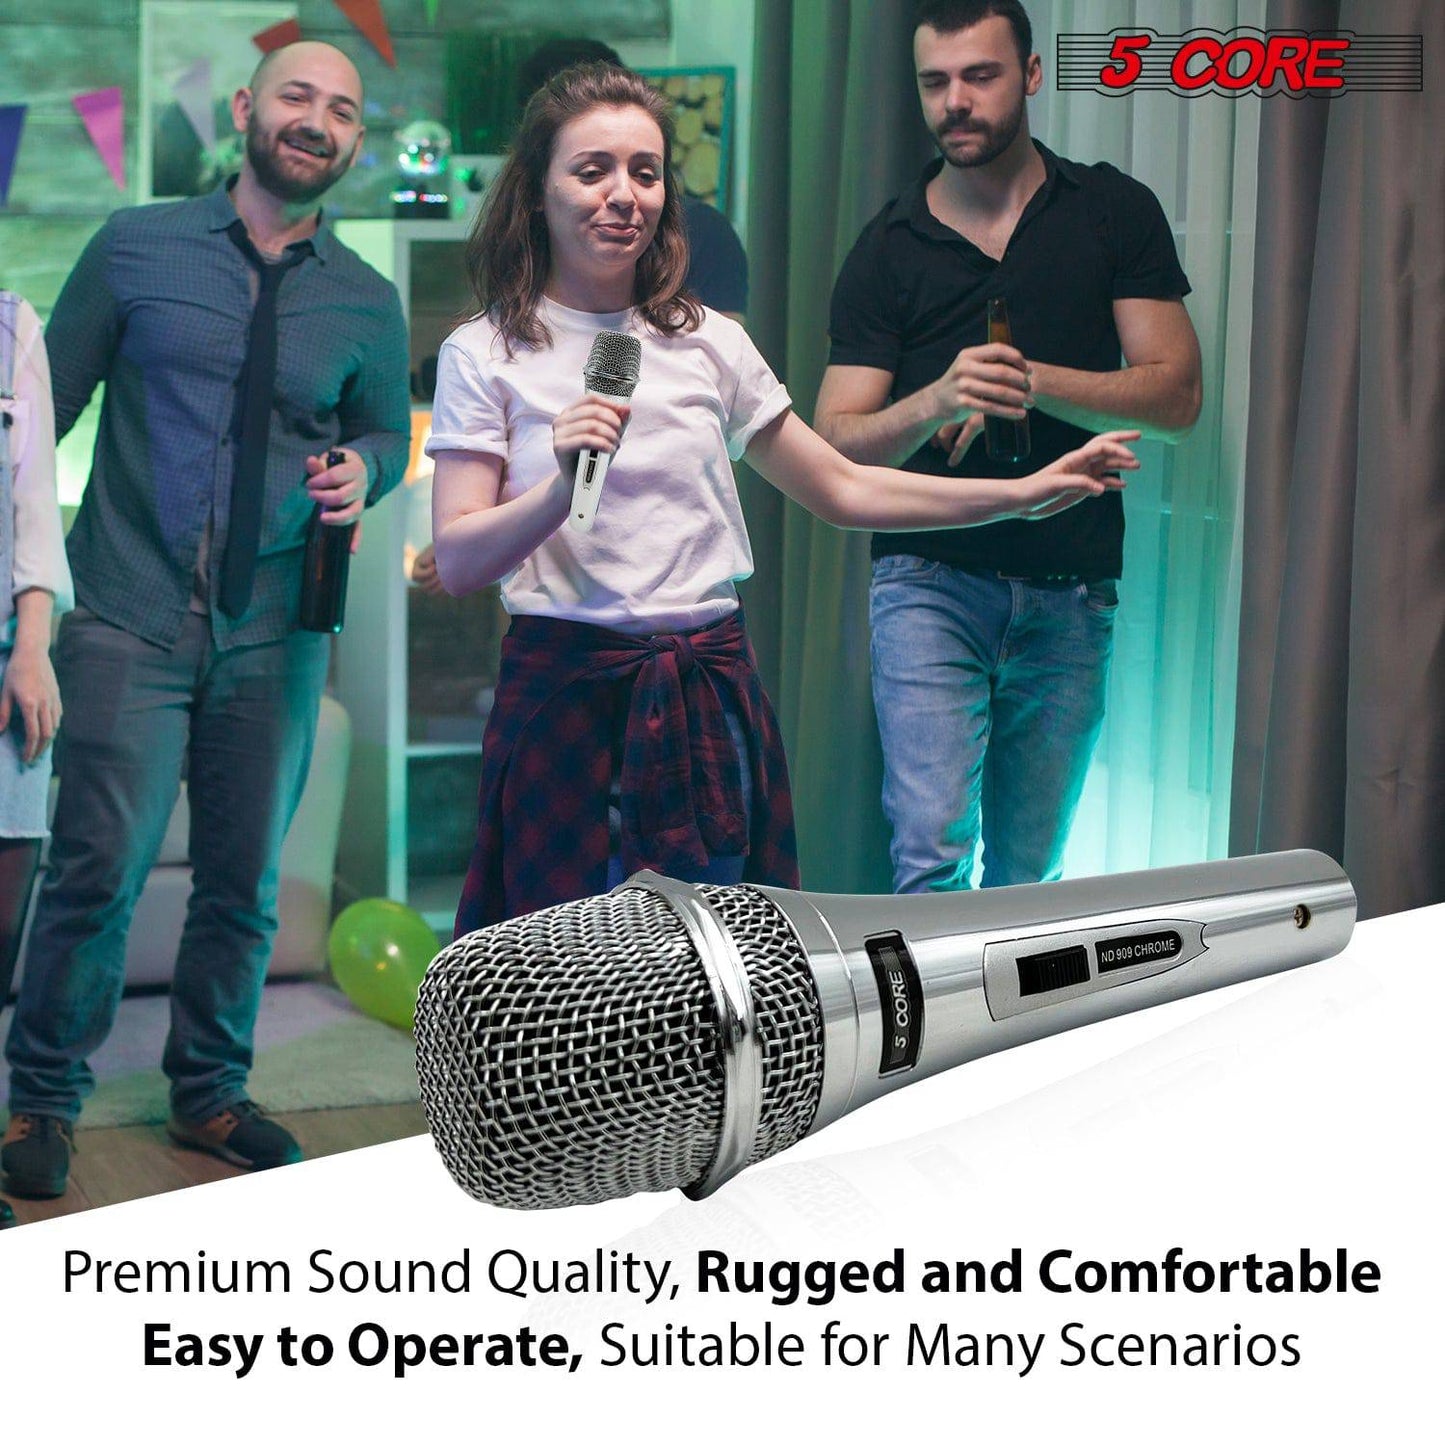 5 Core Microphone Pro Microfono Dynamic Mic XLR Audio Cardiod Vocal Karaoke ND 909 CHROME